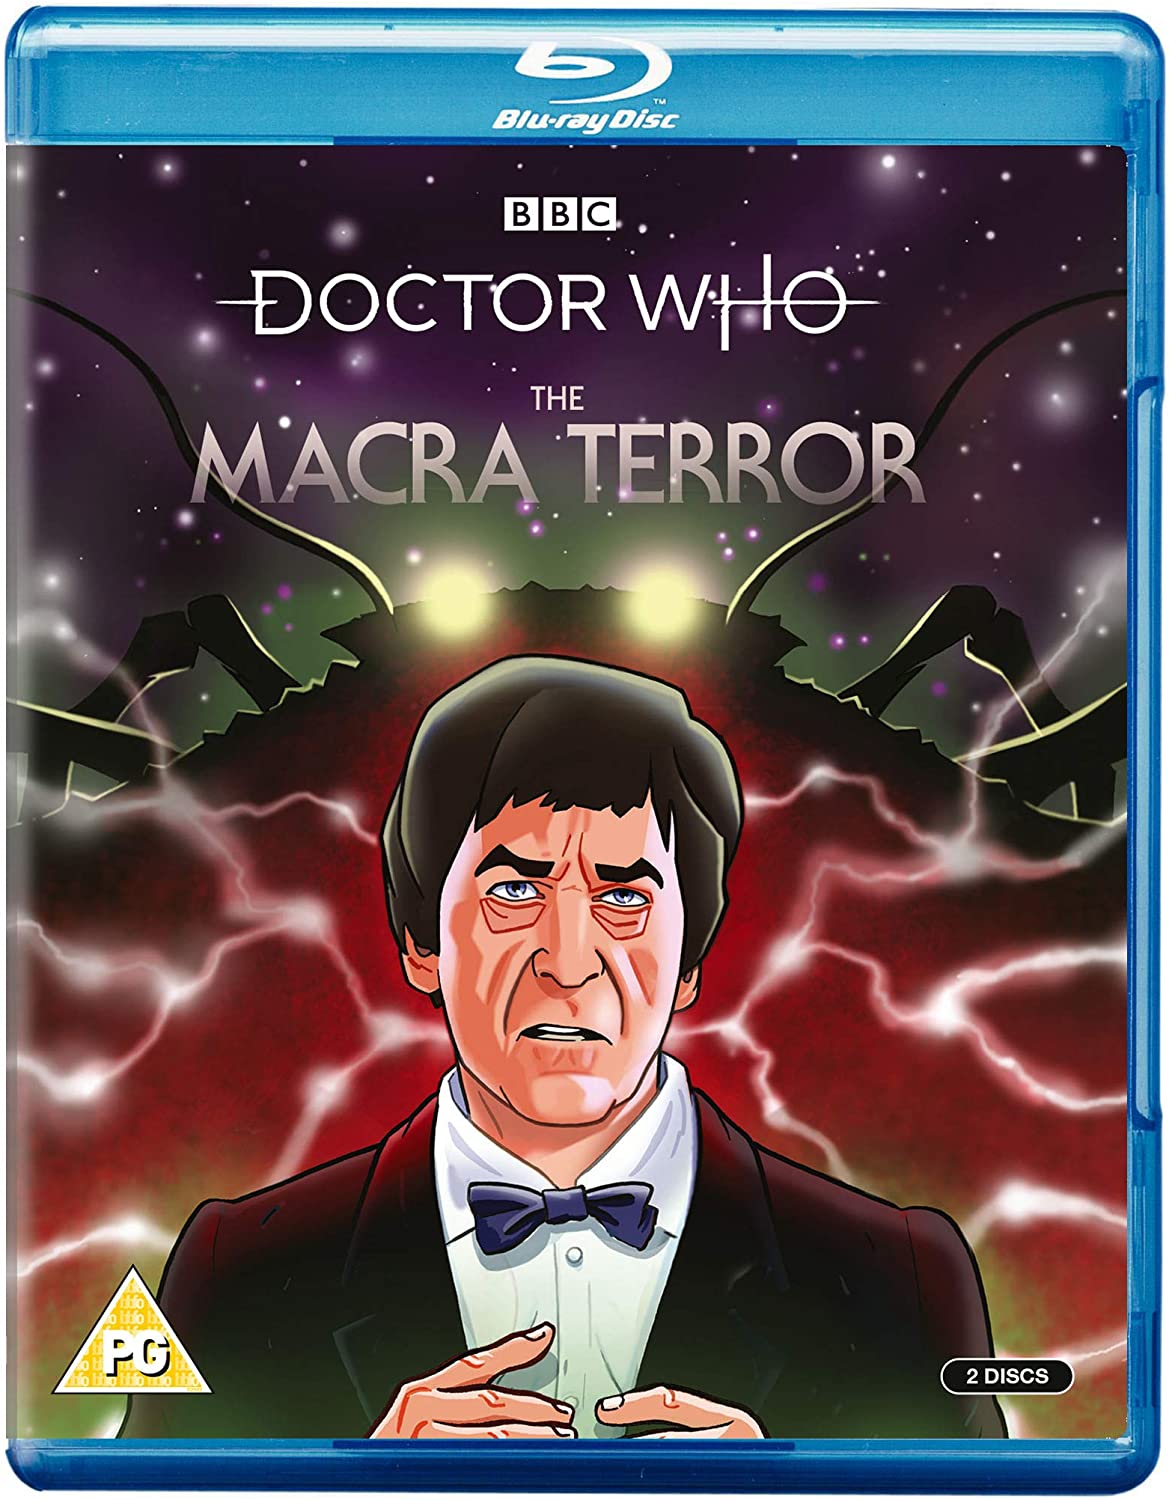 Region 2 Blu-ray cover